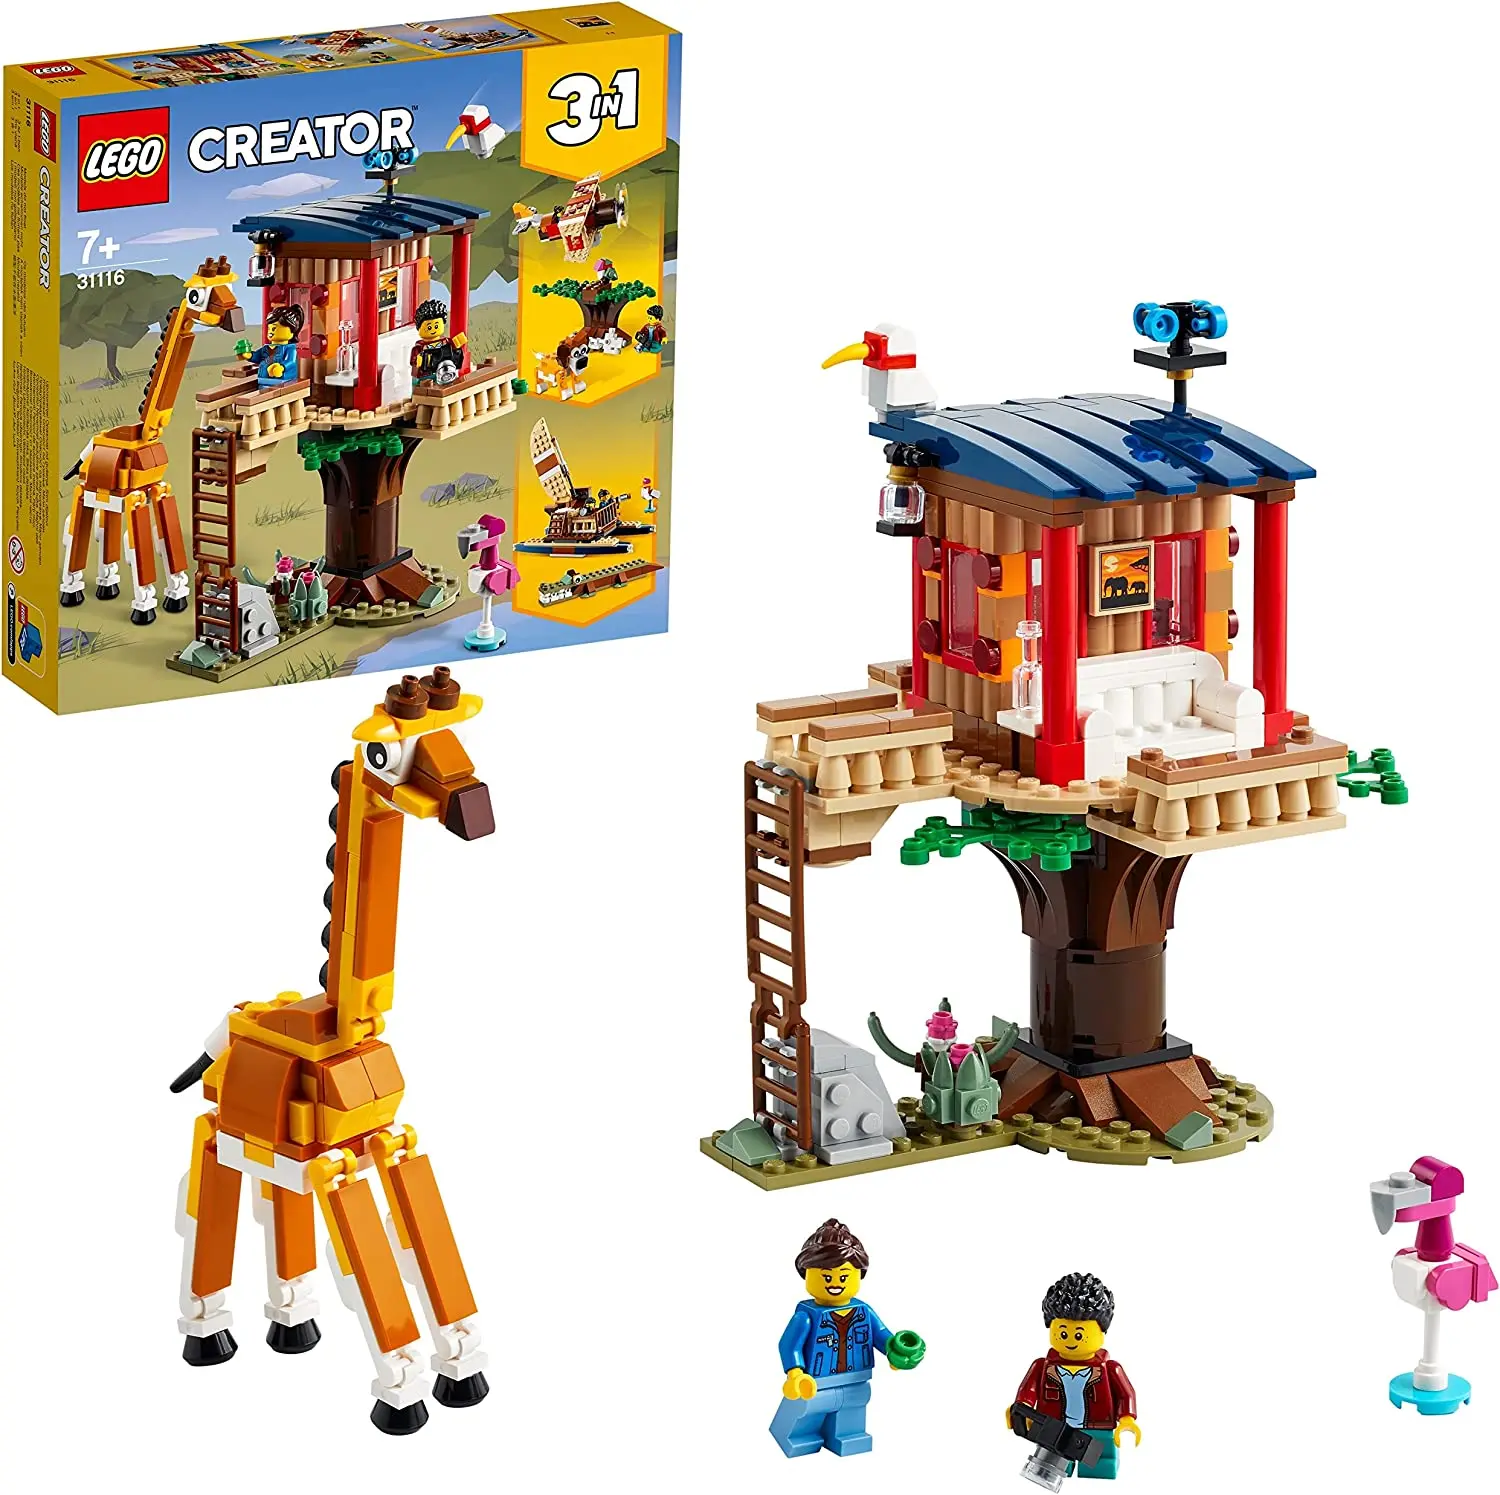 

Конструктор LEGO 31116 Creator 3 в 1 сафари дом на дереве дикой природы, катамаран, искусство, набор для строительства с лодкой, самолетом и игрушечны...